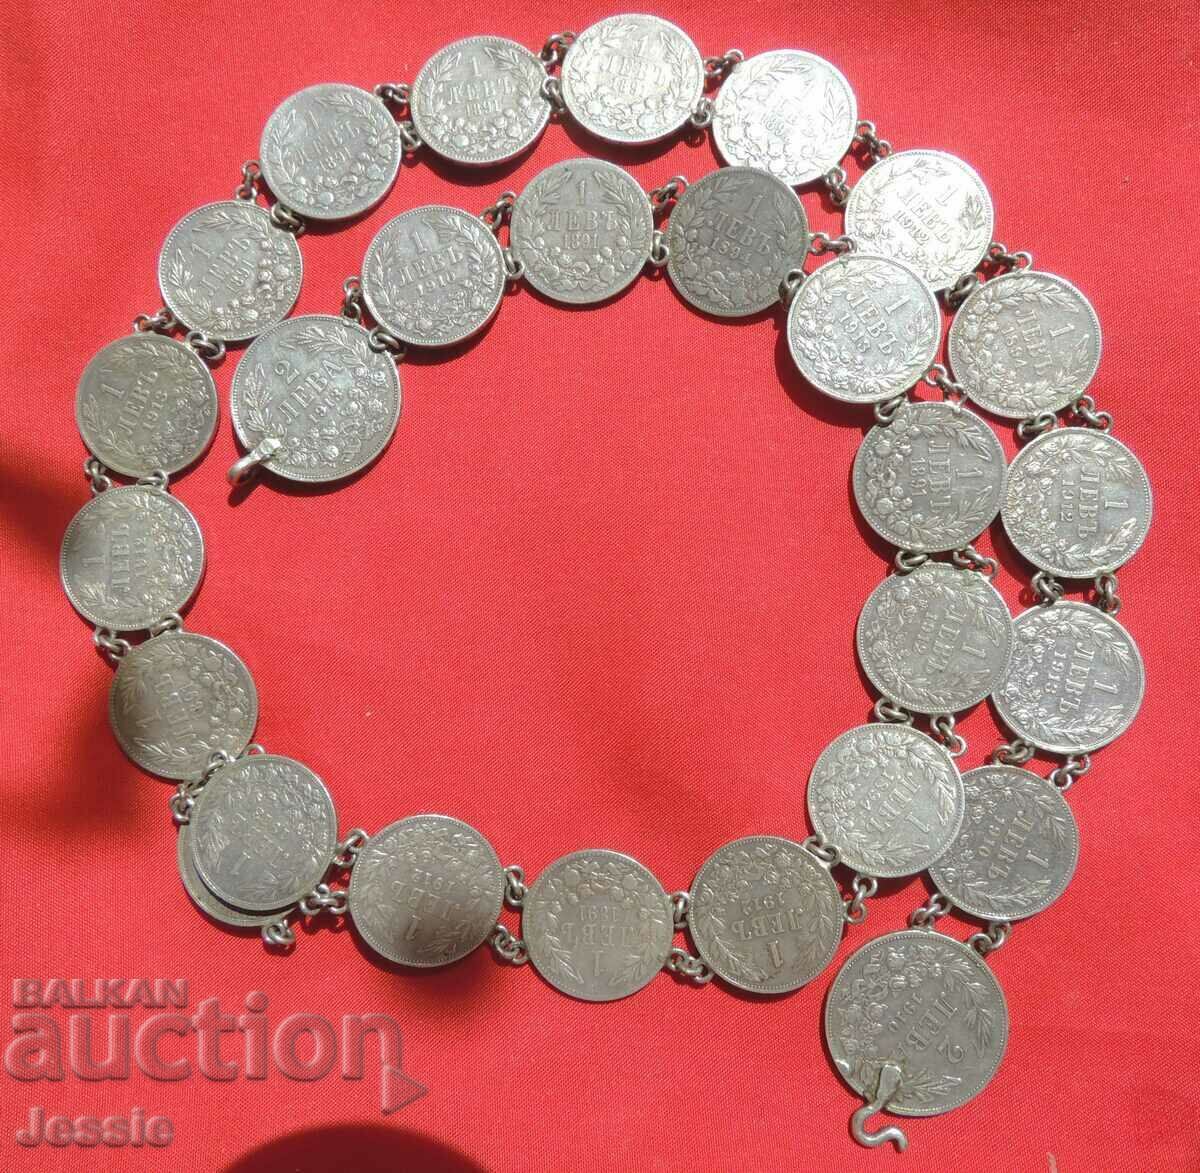 Γυναικεία ζώνη κοσμημάτων από ασημένια νομίσματα 1 και 2 λέβα Ferdinand